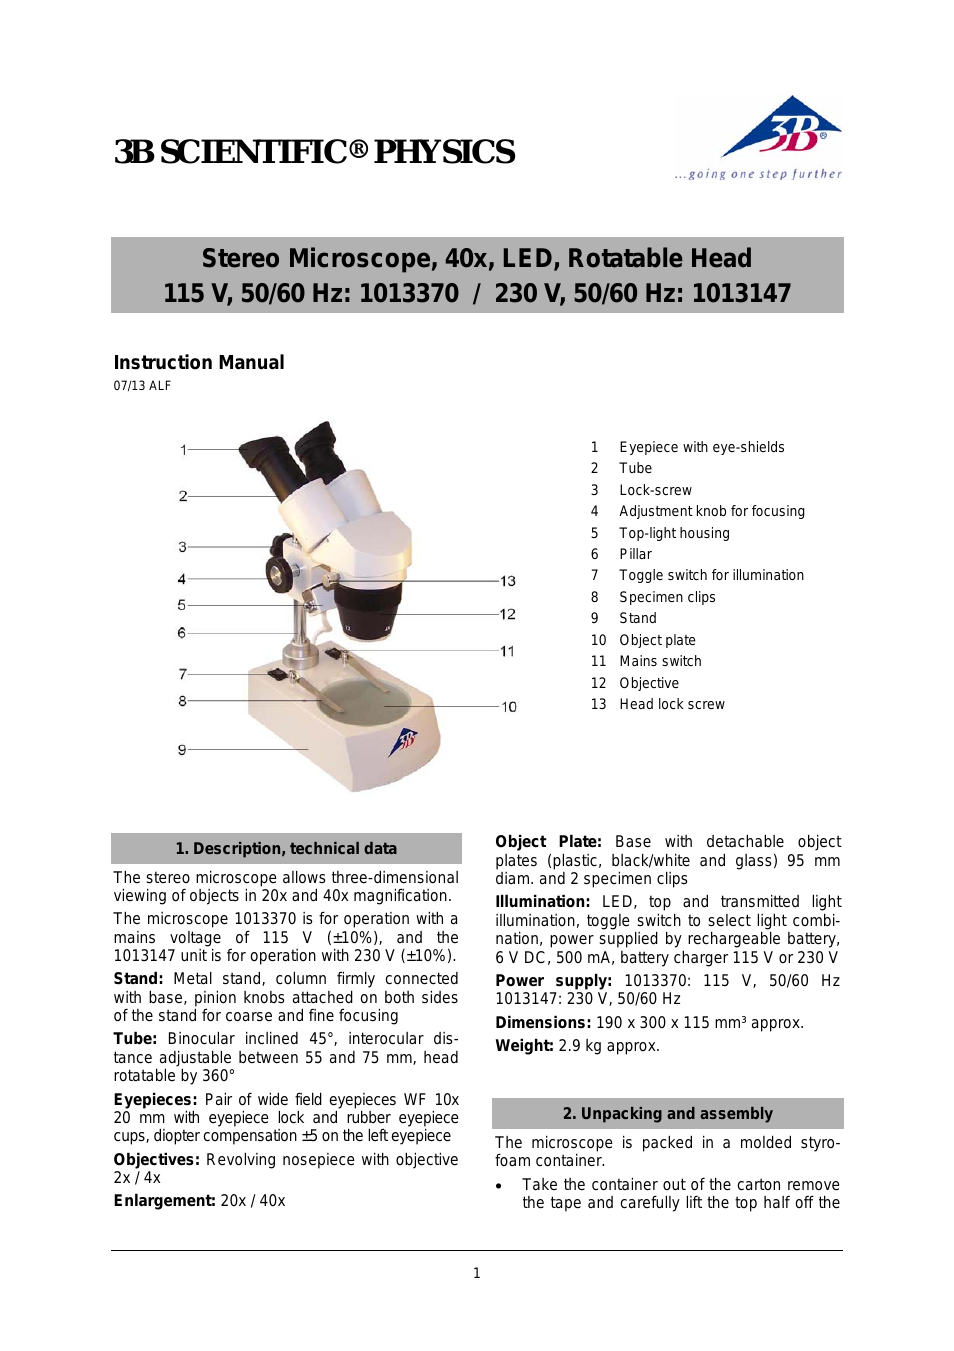 Stereo Mikroscope, 40x,LED, Rotatable Head (115 V, 50__60 Hz)